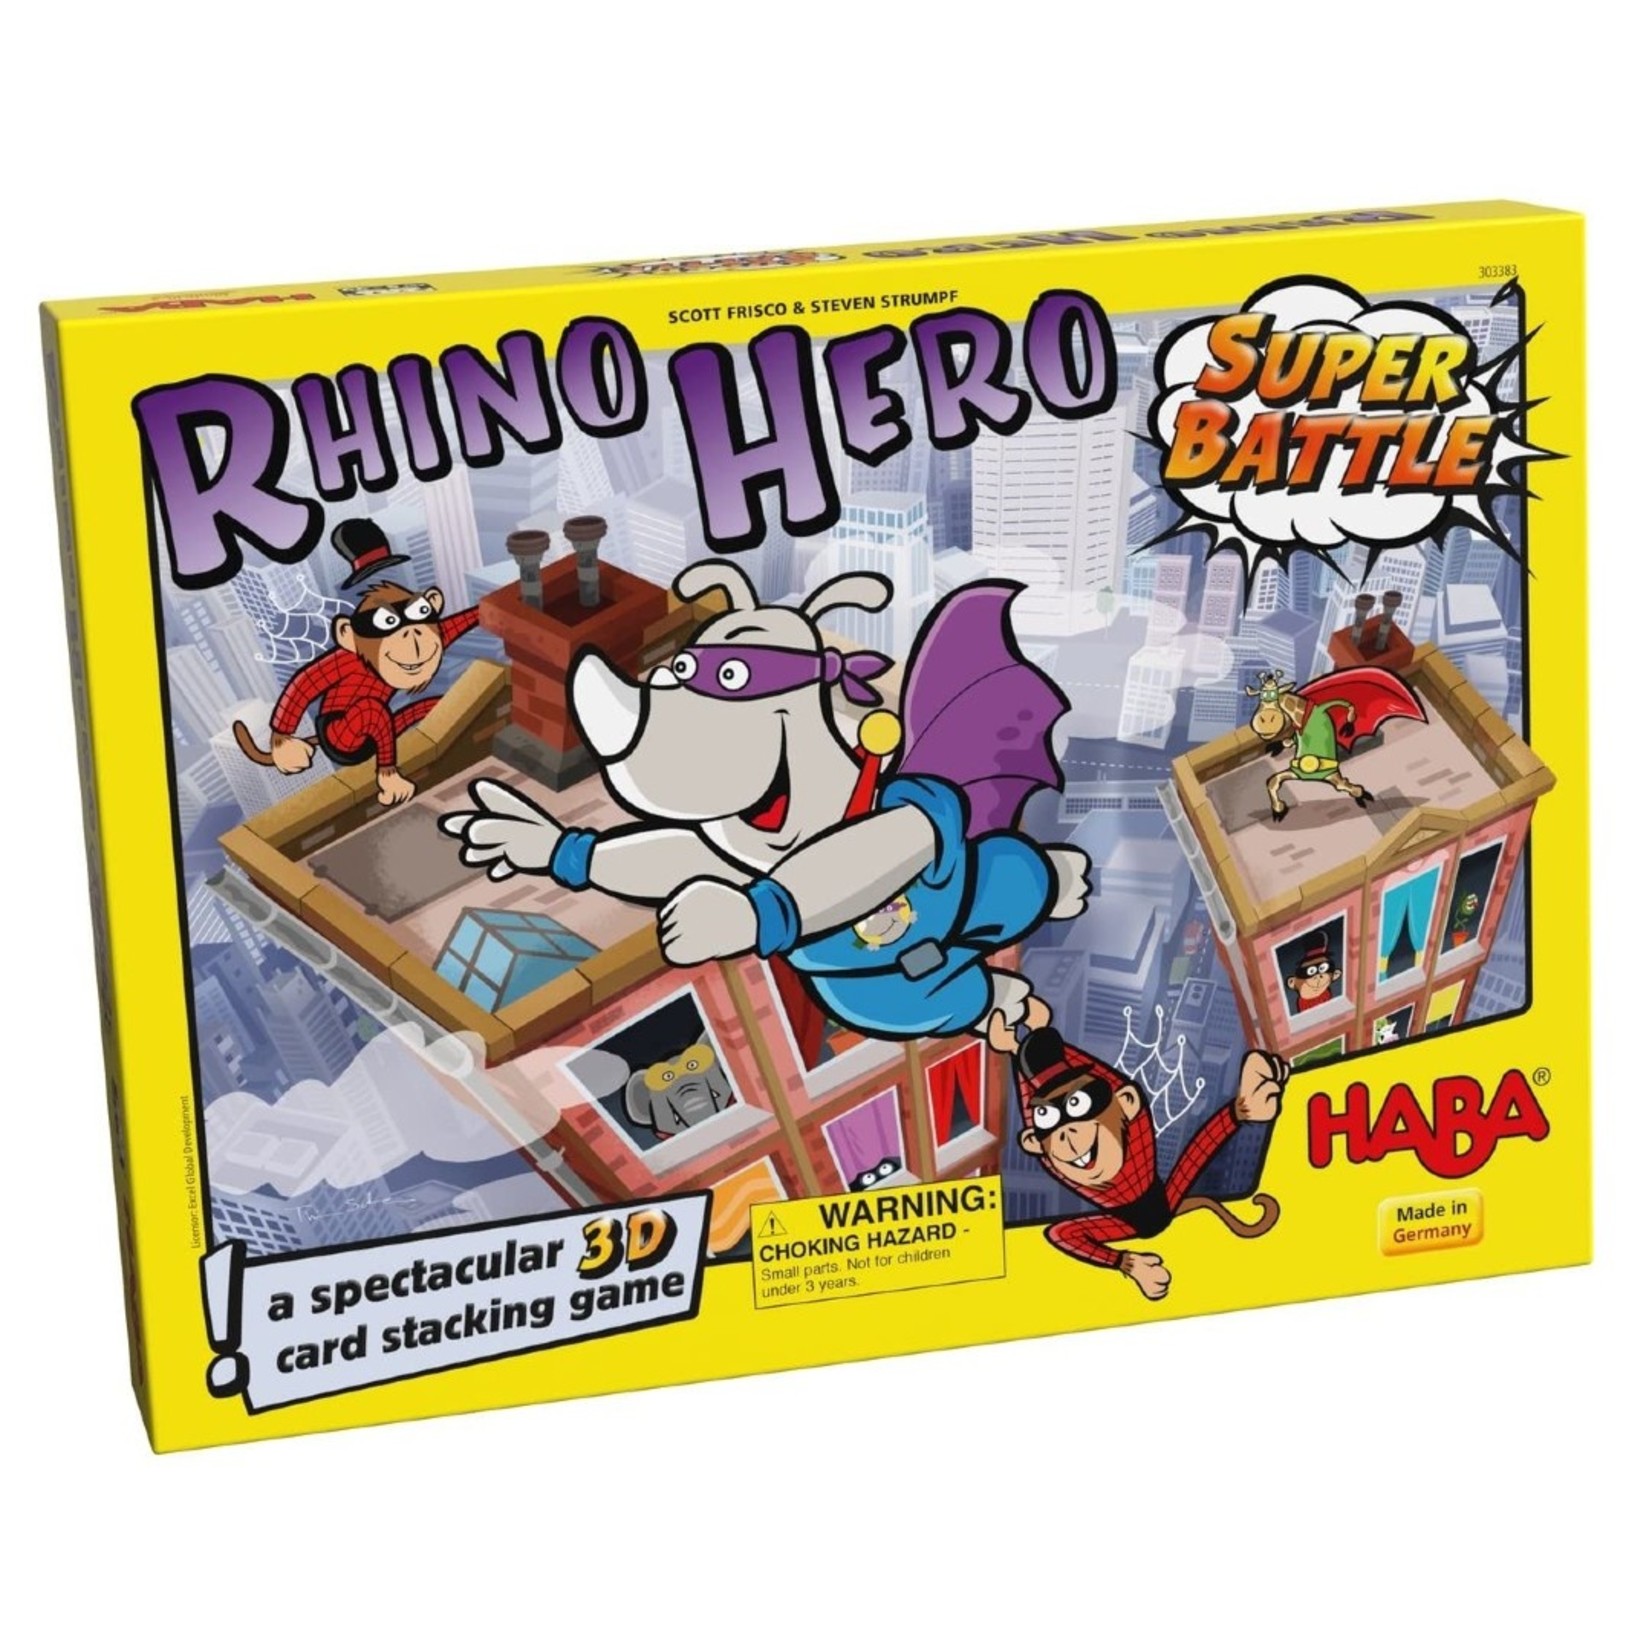 HABA HABA Rhino Hero Super Battle